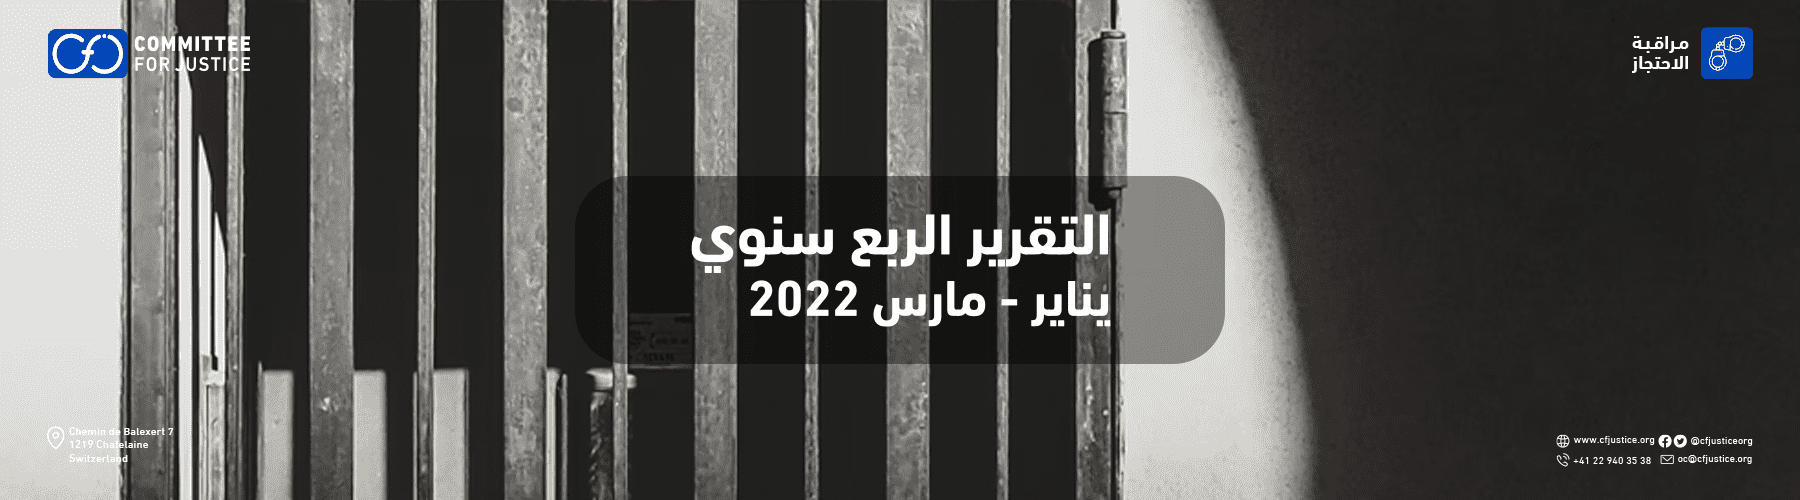 التقرير الربع سنوي الأول لمراقبة الانتهاكات داخل مراكز السجون والاحتجاز بمصر: انفراجة وهمية وإعدامات بالجملة